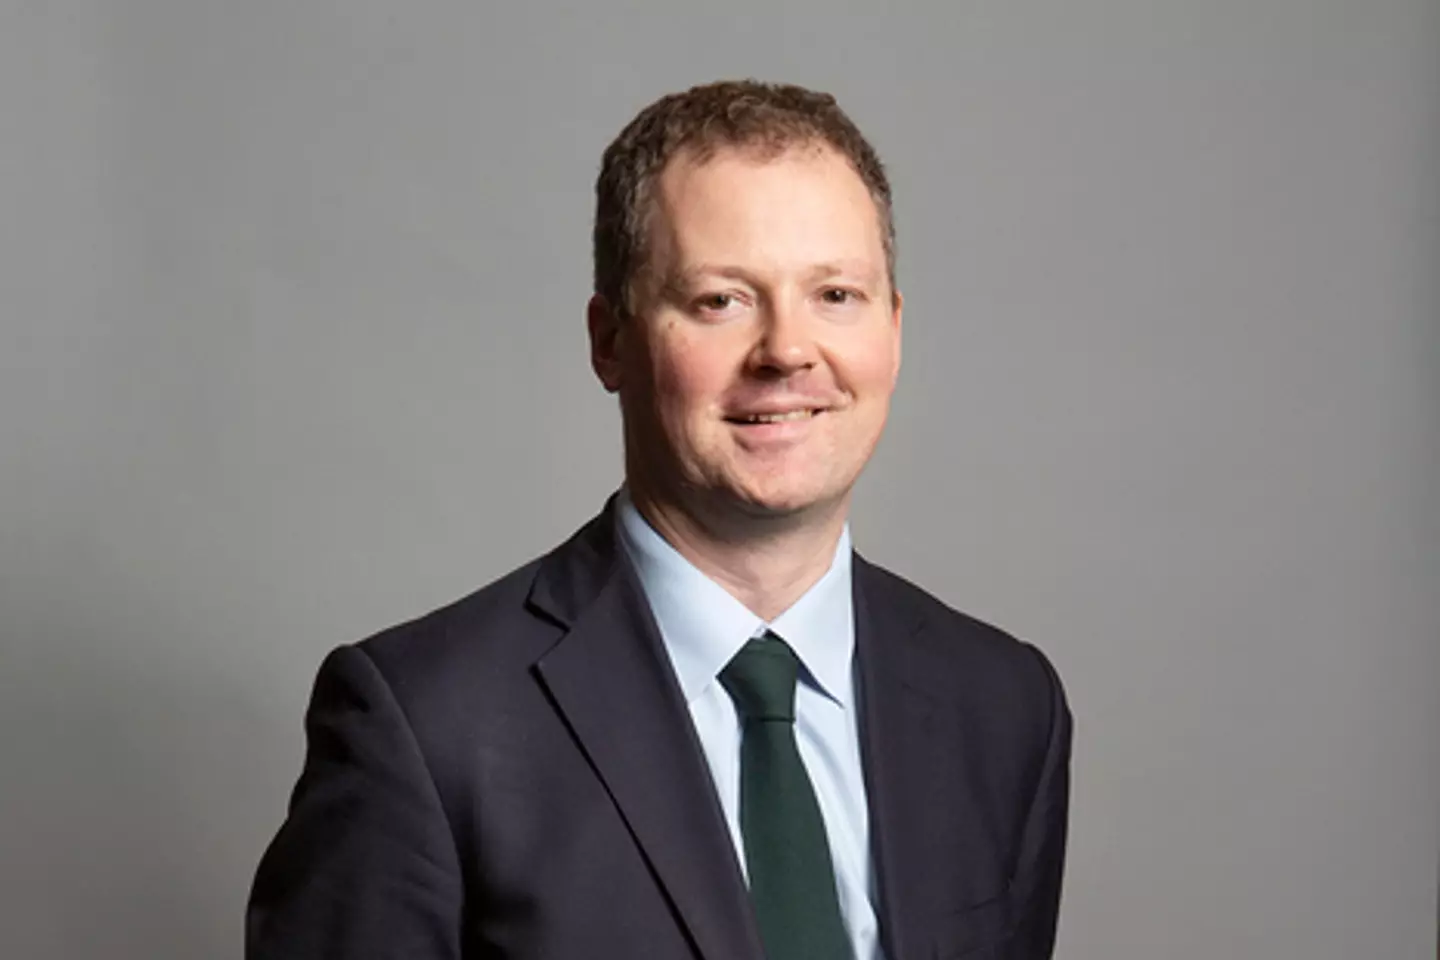 Health Minister Neil O'Brien.